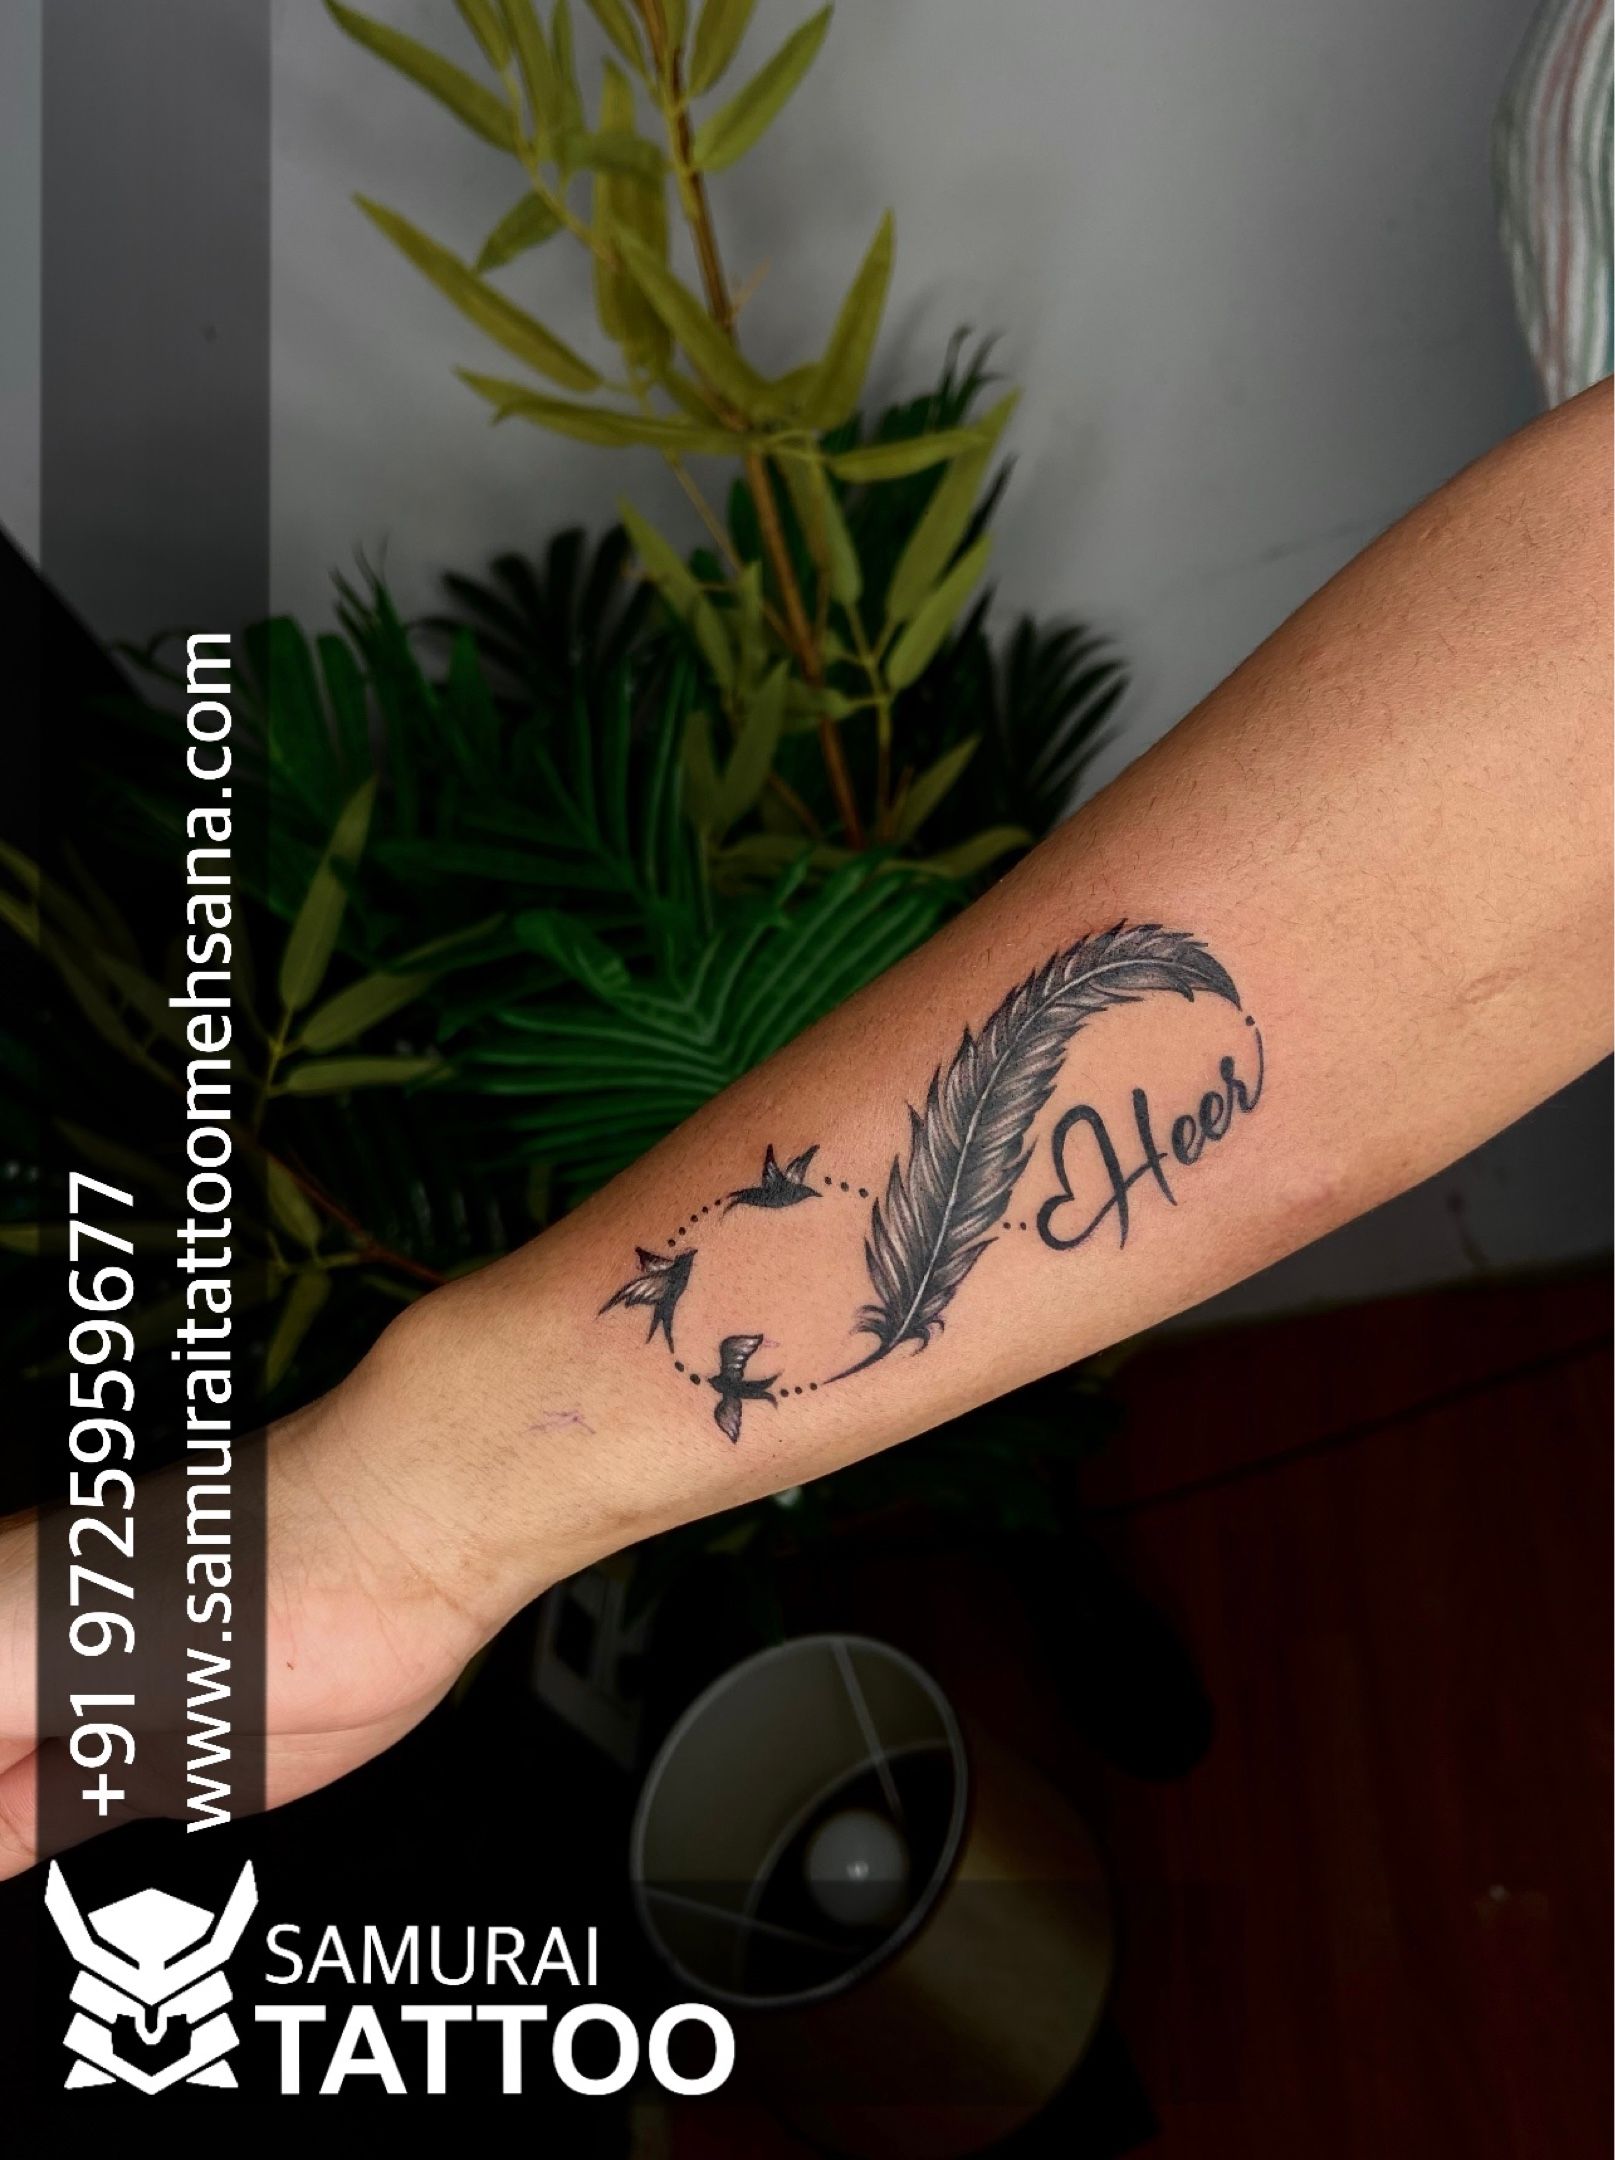 Double name letter font tattoo Seema  Sasi Wins tattoos  Facebook